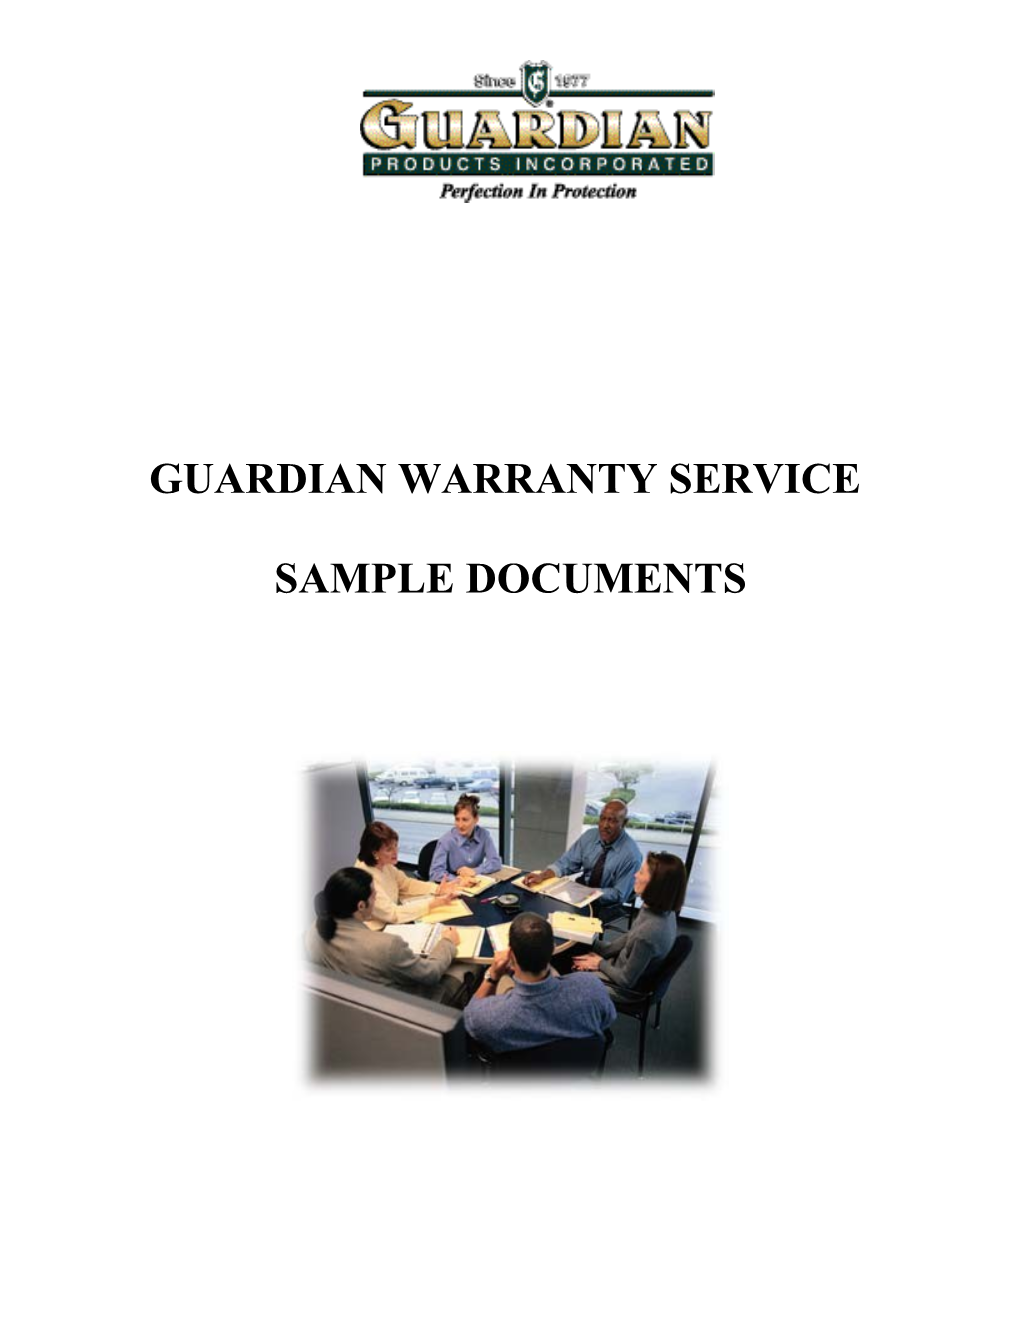 Guardian Warranty Service Process